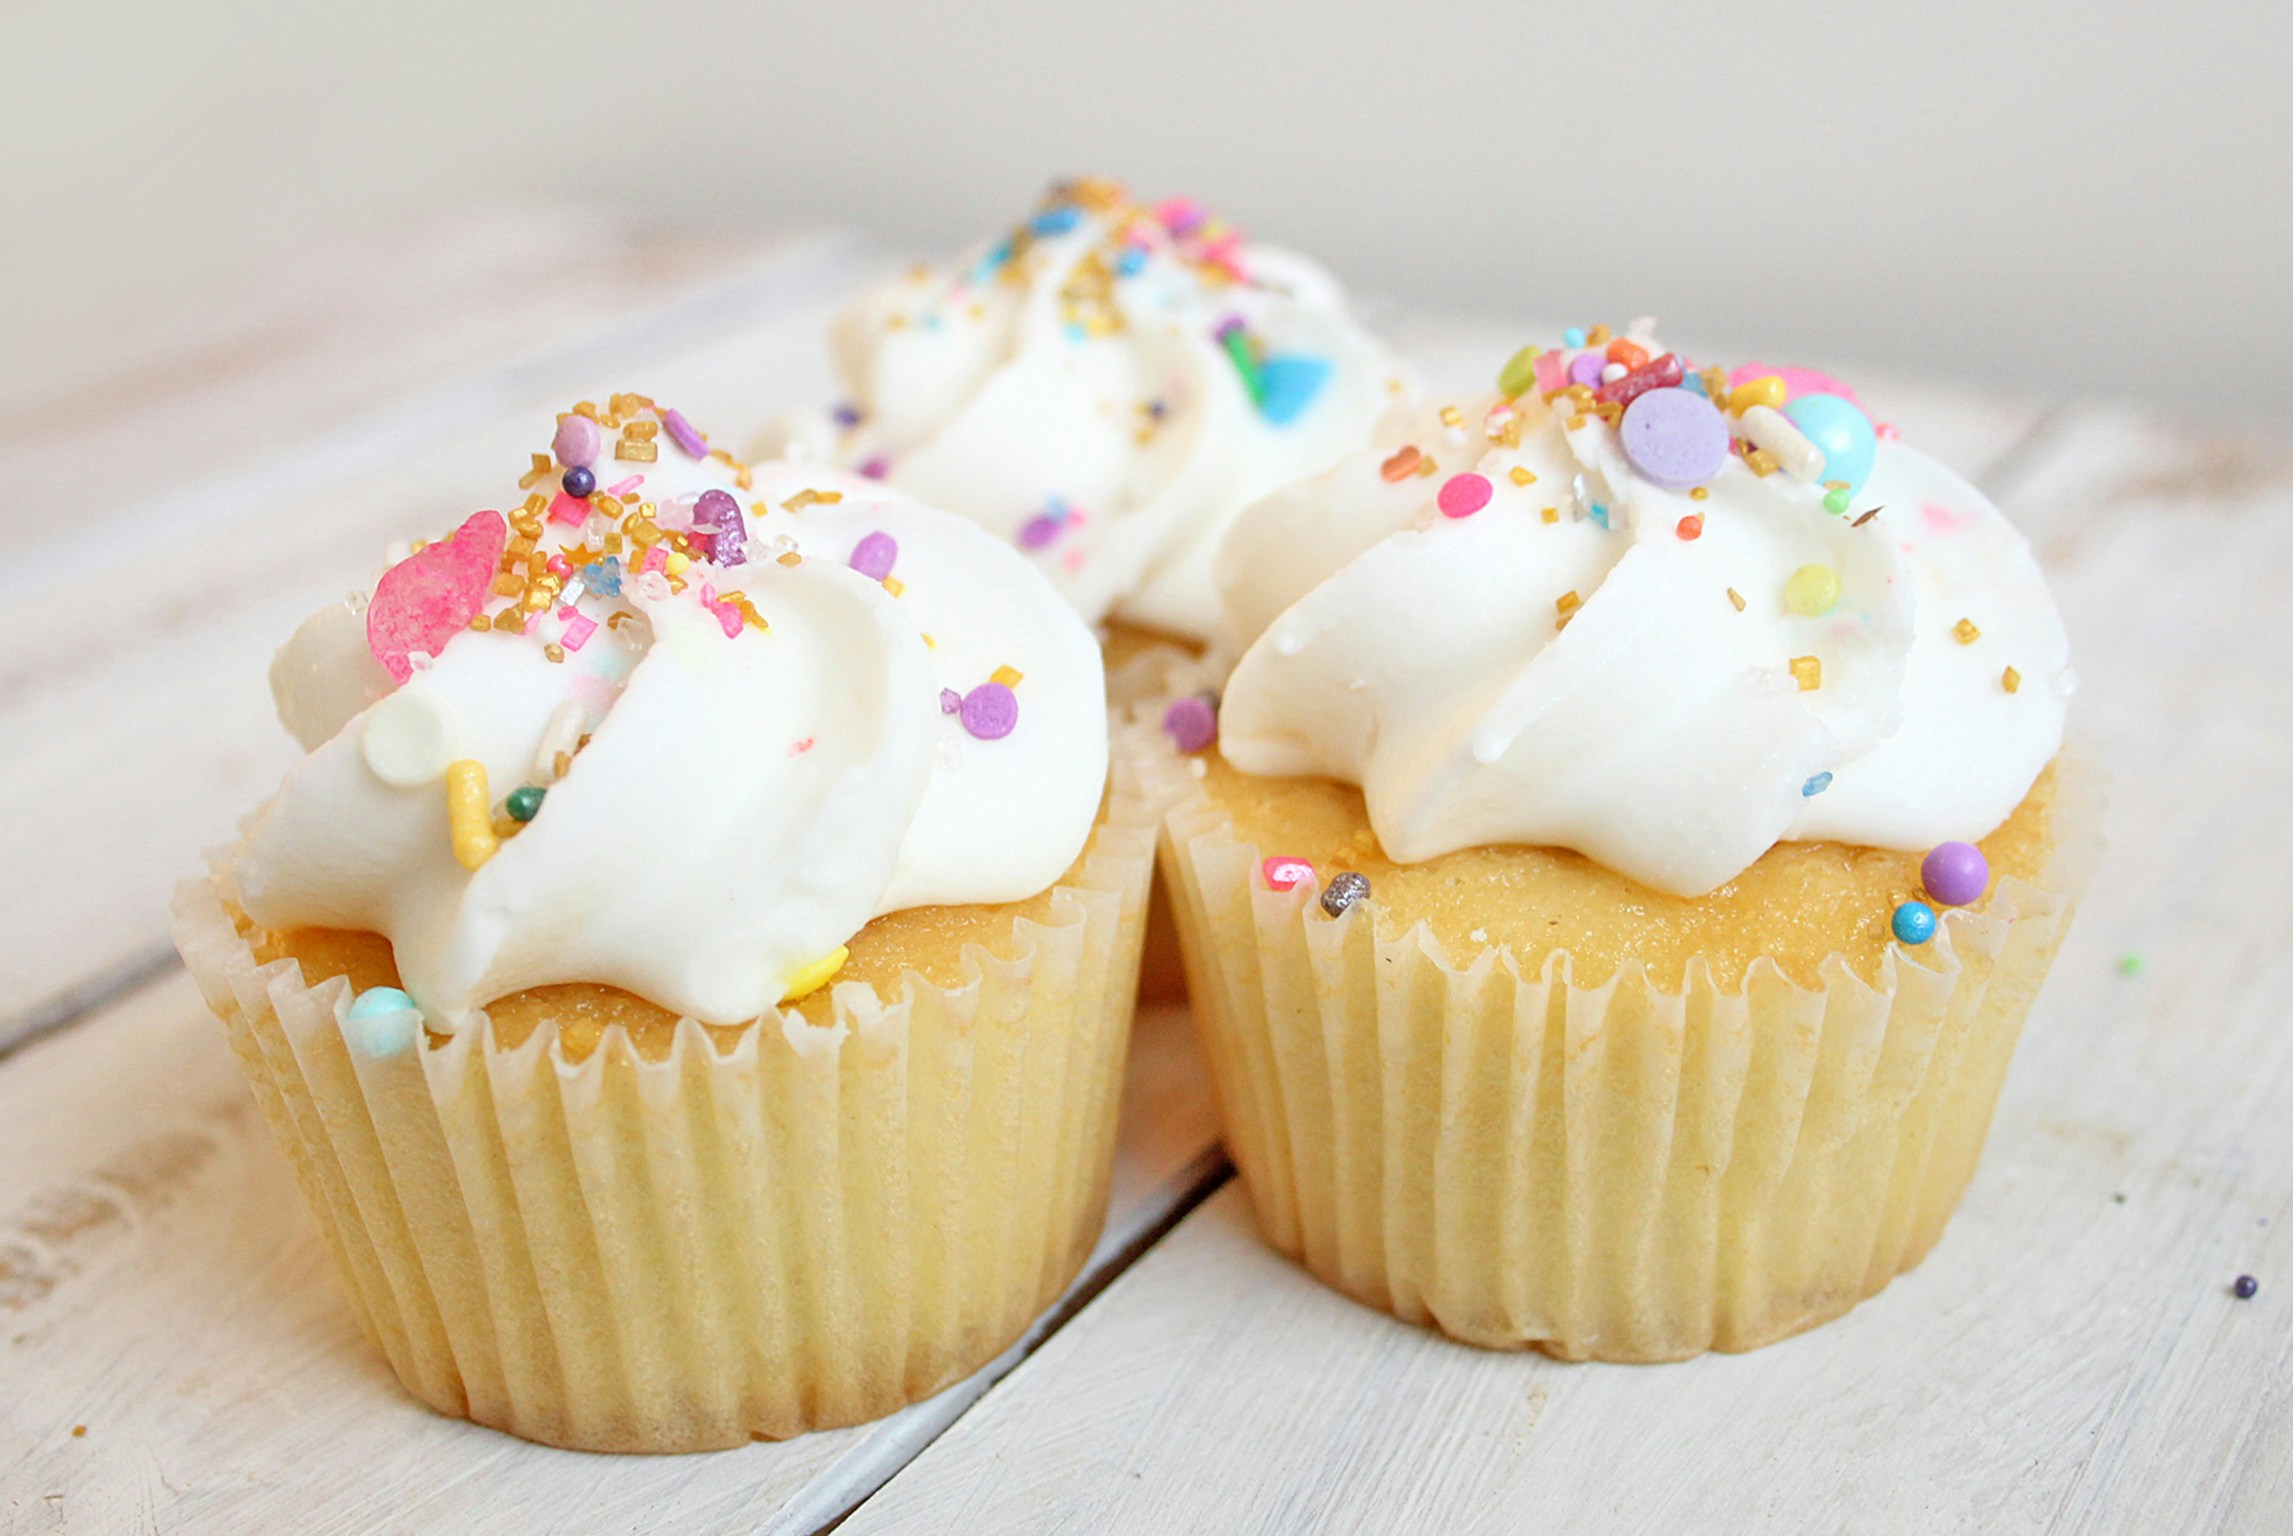 Metabolisches Syndrom Folgeerkrankungen: Zuckerreiche Cupcakes mit weißem Zuckerguss und bunten Streuseln, die als Beispiel für süße Lebensmittel dienen können, deren Konsum bei der Prävention von metabolischem Syndrom und dessen Folgeerkrankungen moderiert werden sollte.